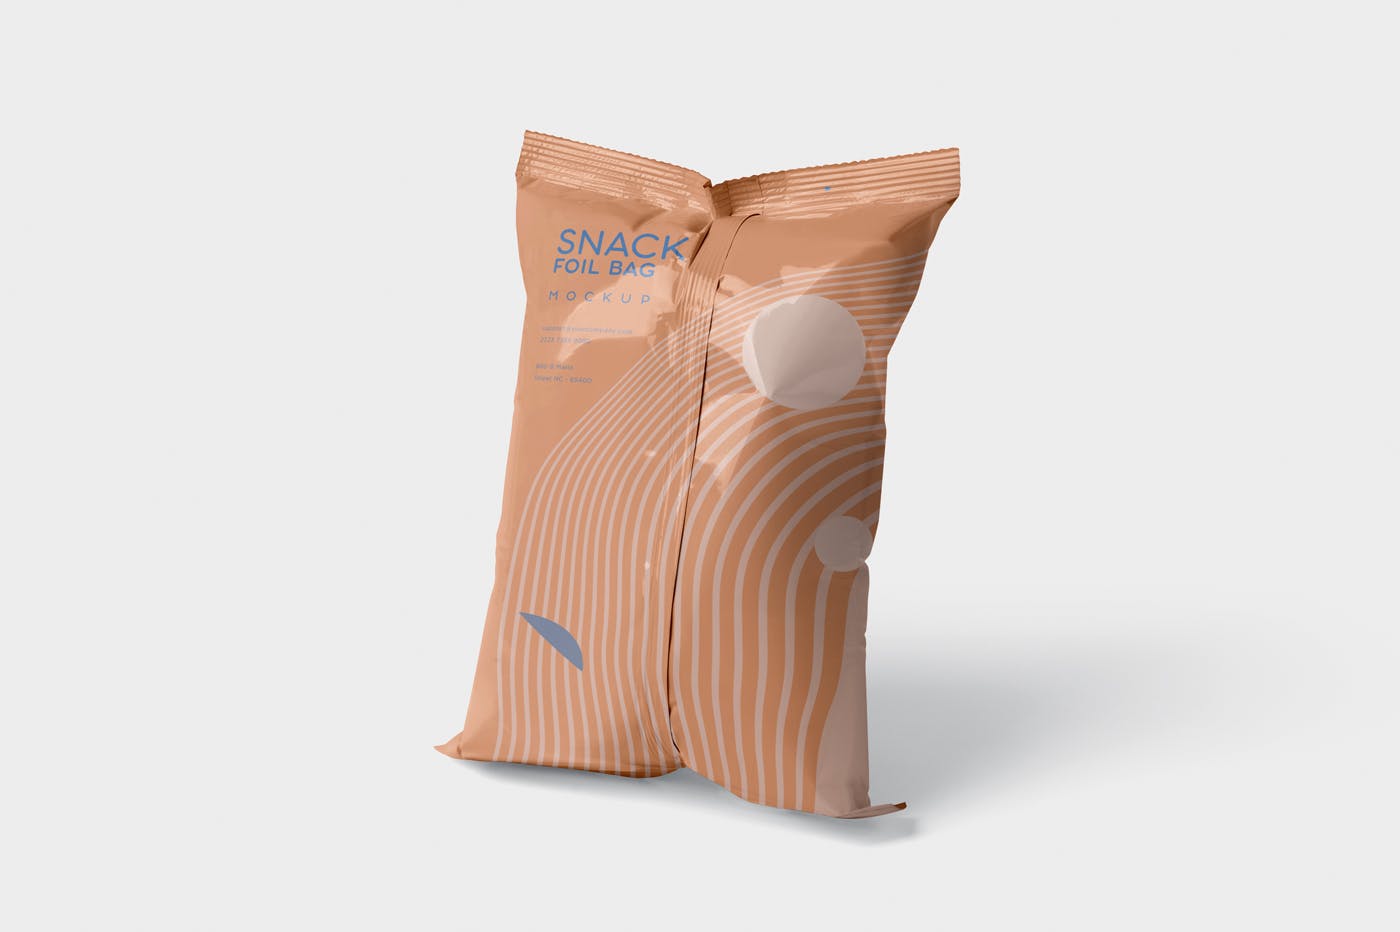 小吃零食铝箔袋/塑料包装袋设计图第一素材精选 Snack Foil Bag Mockup – Plastic插图(2)